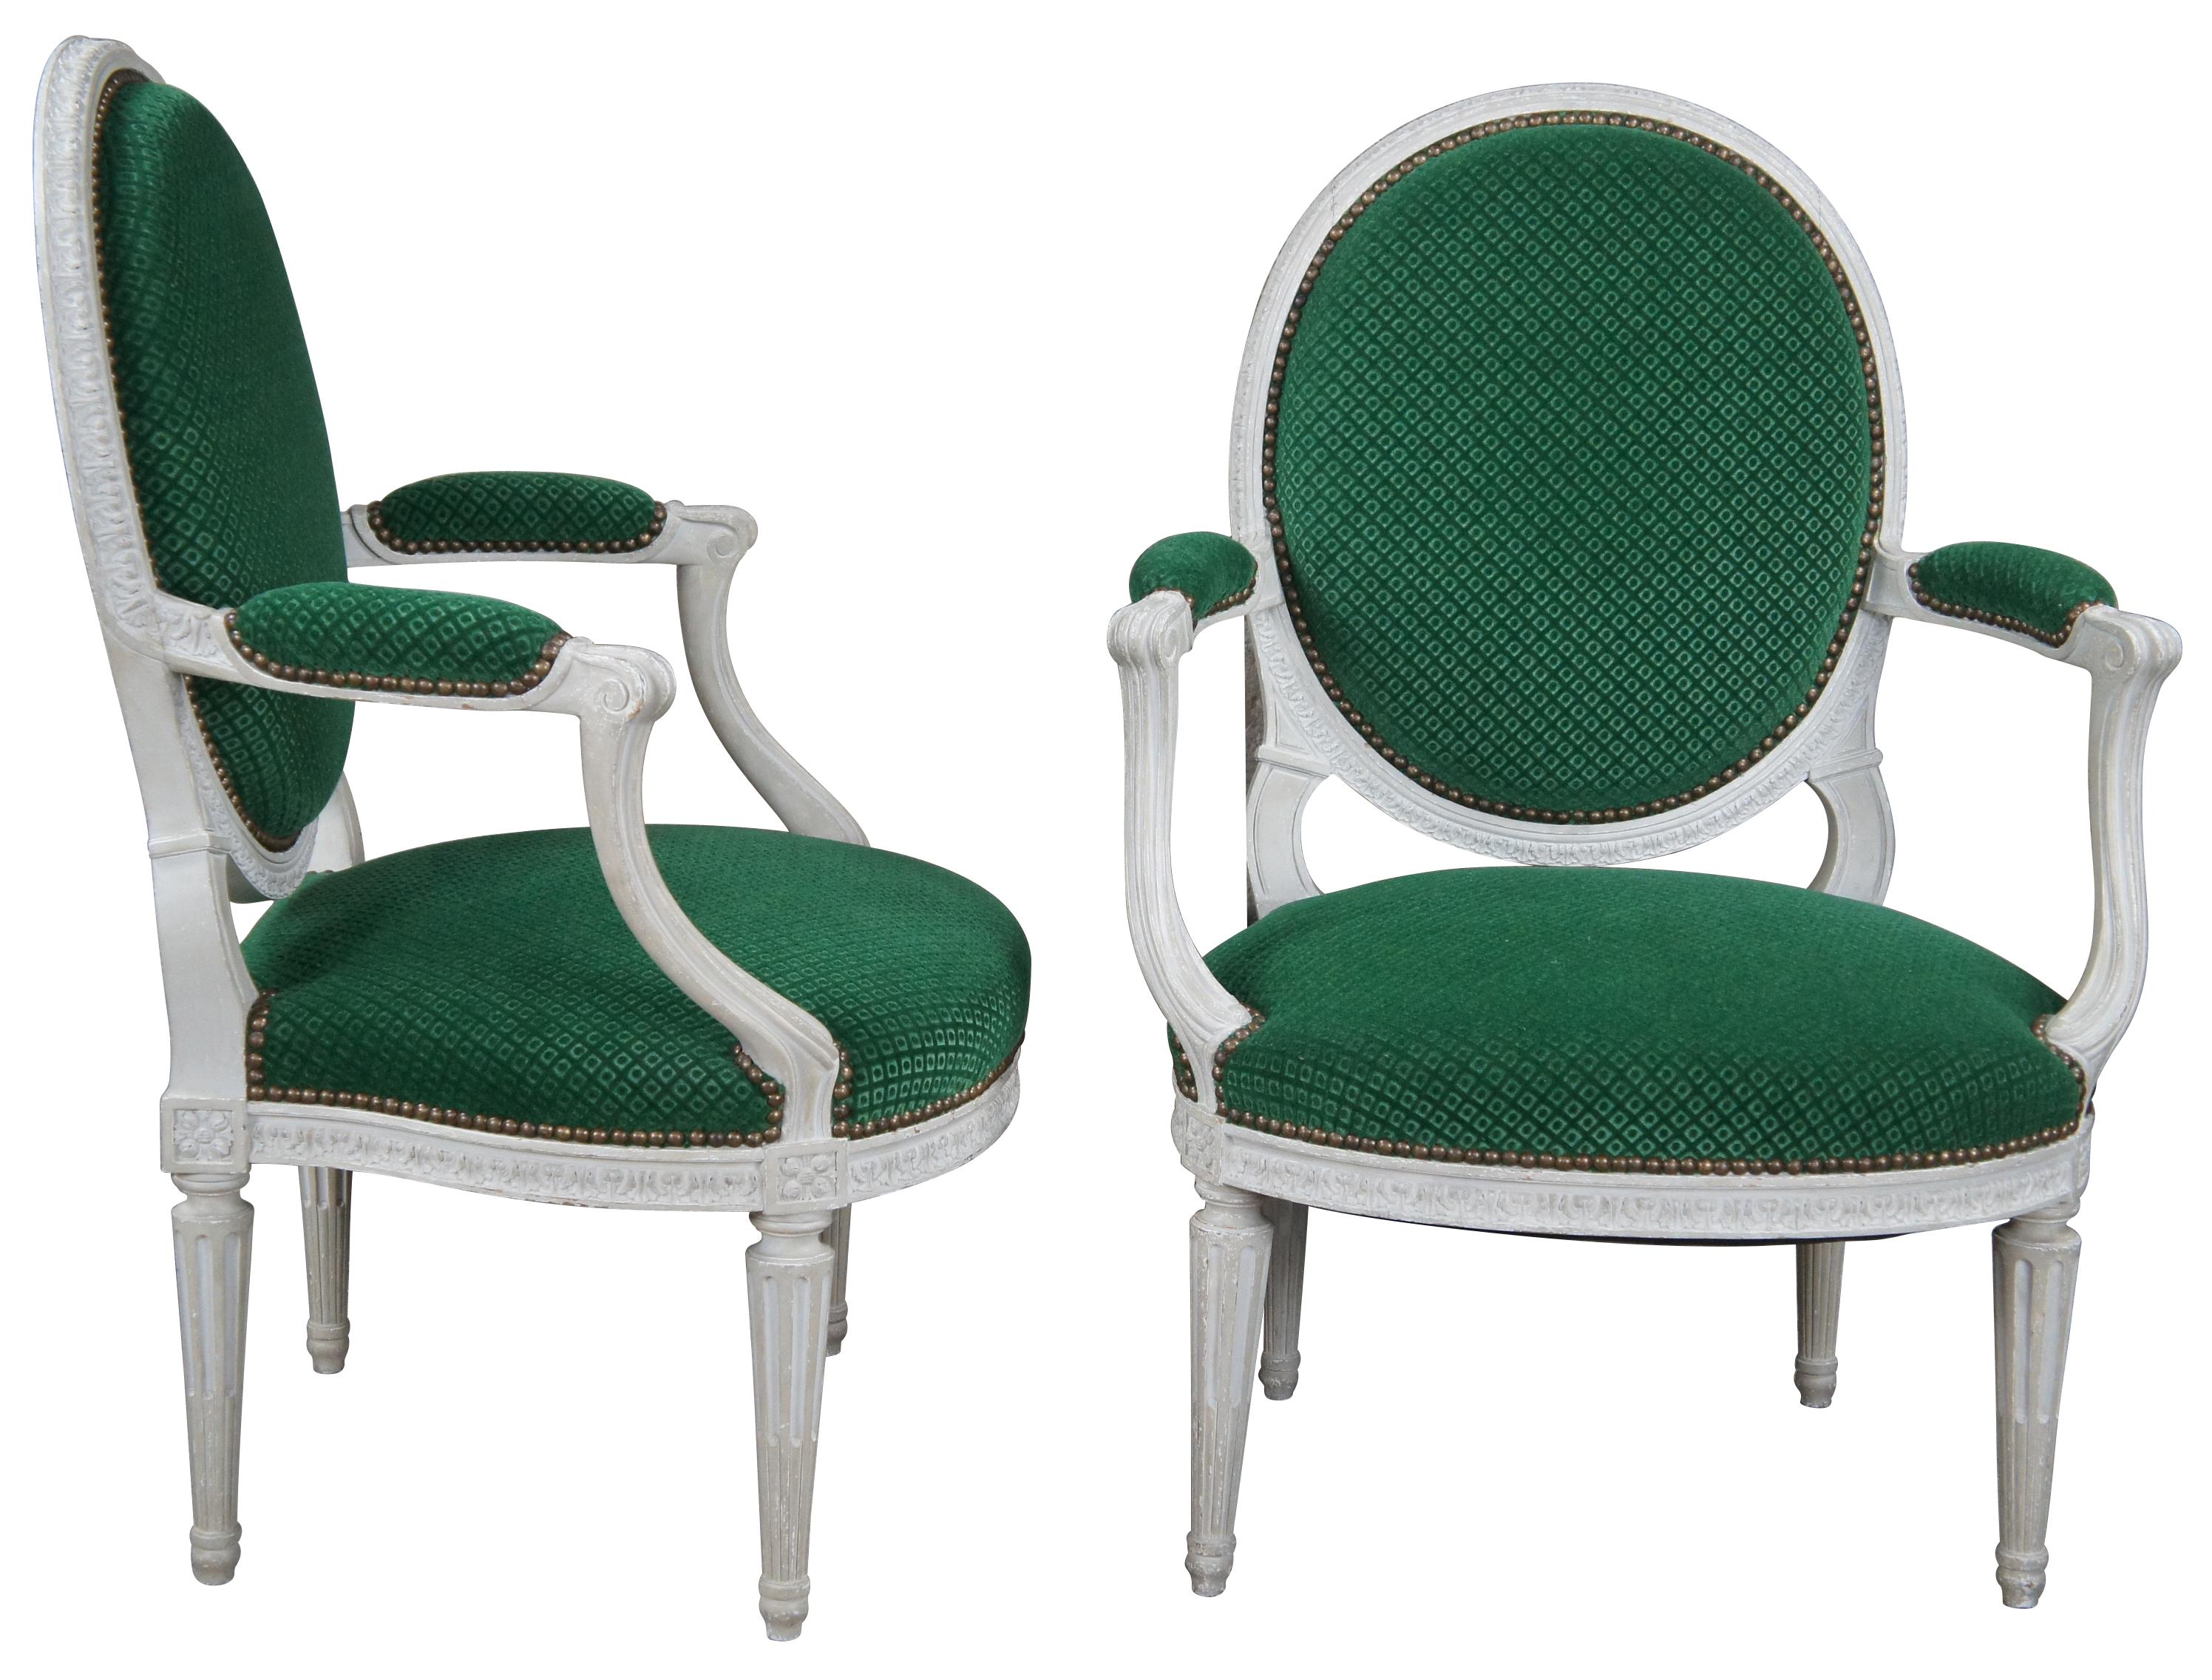 Ein elegantes Paar englischer offener Sessel im George-III-Stil, ca. 1960er Jahre. Mit Ballonrücken, gepolsterten Armlehnen und konisch zulaufenden, kannelierten Beinen. Die Stühle sind mit Akanthusleisten versehen, mit grünem Rautenstoff gepolstert